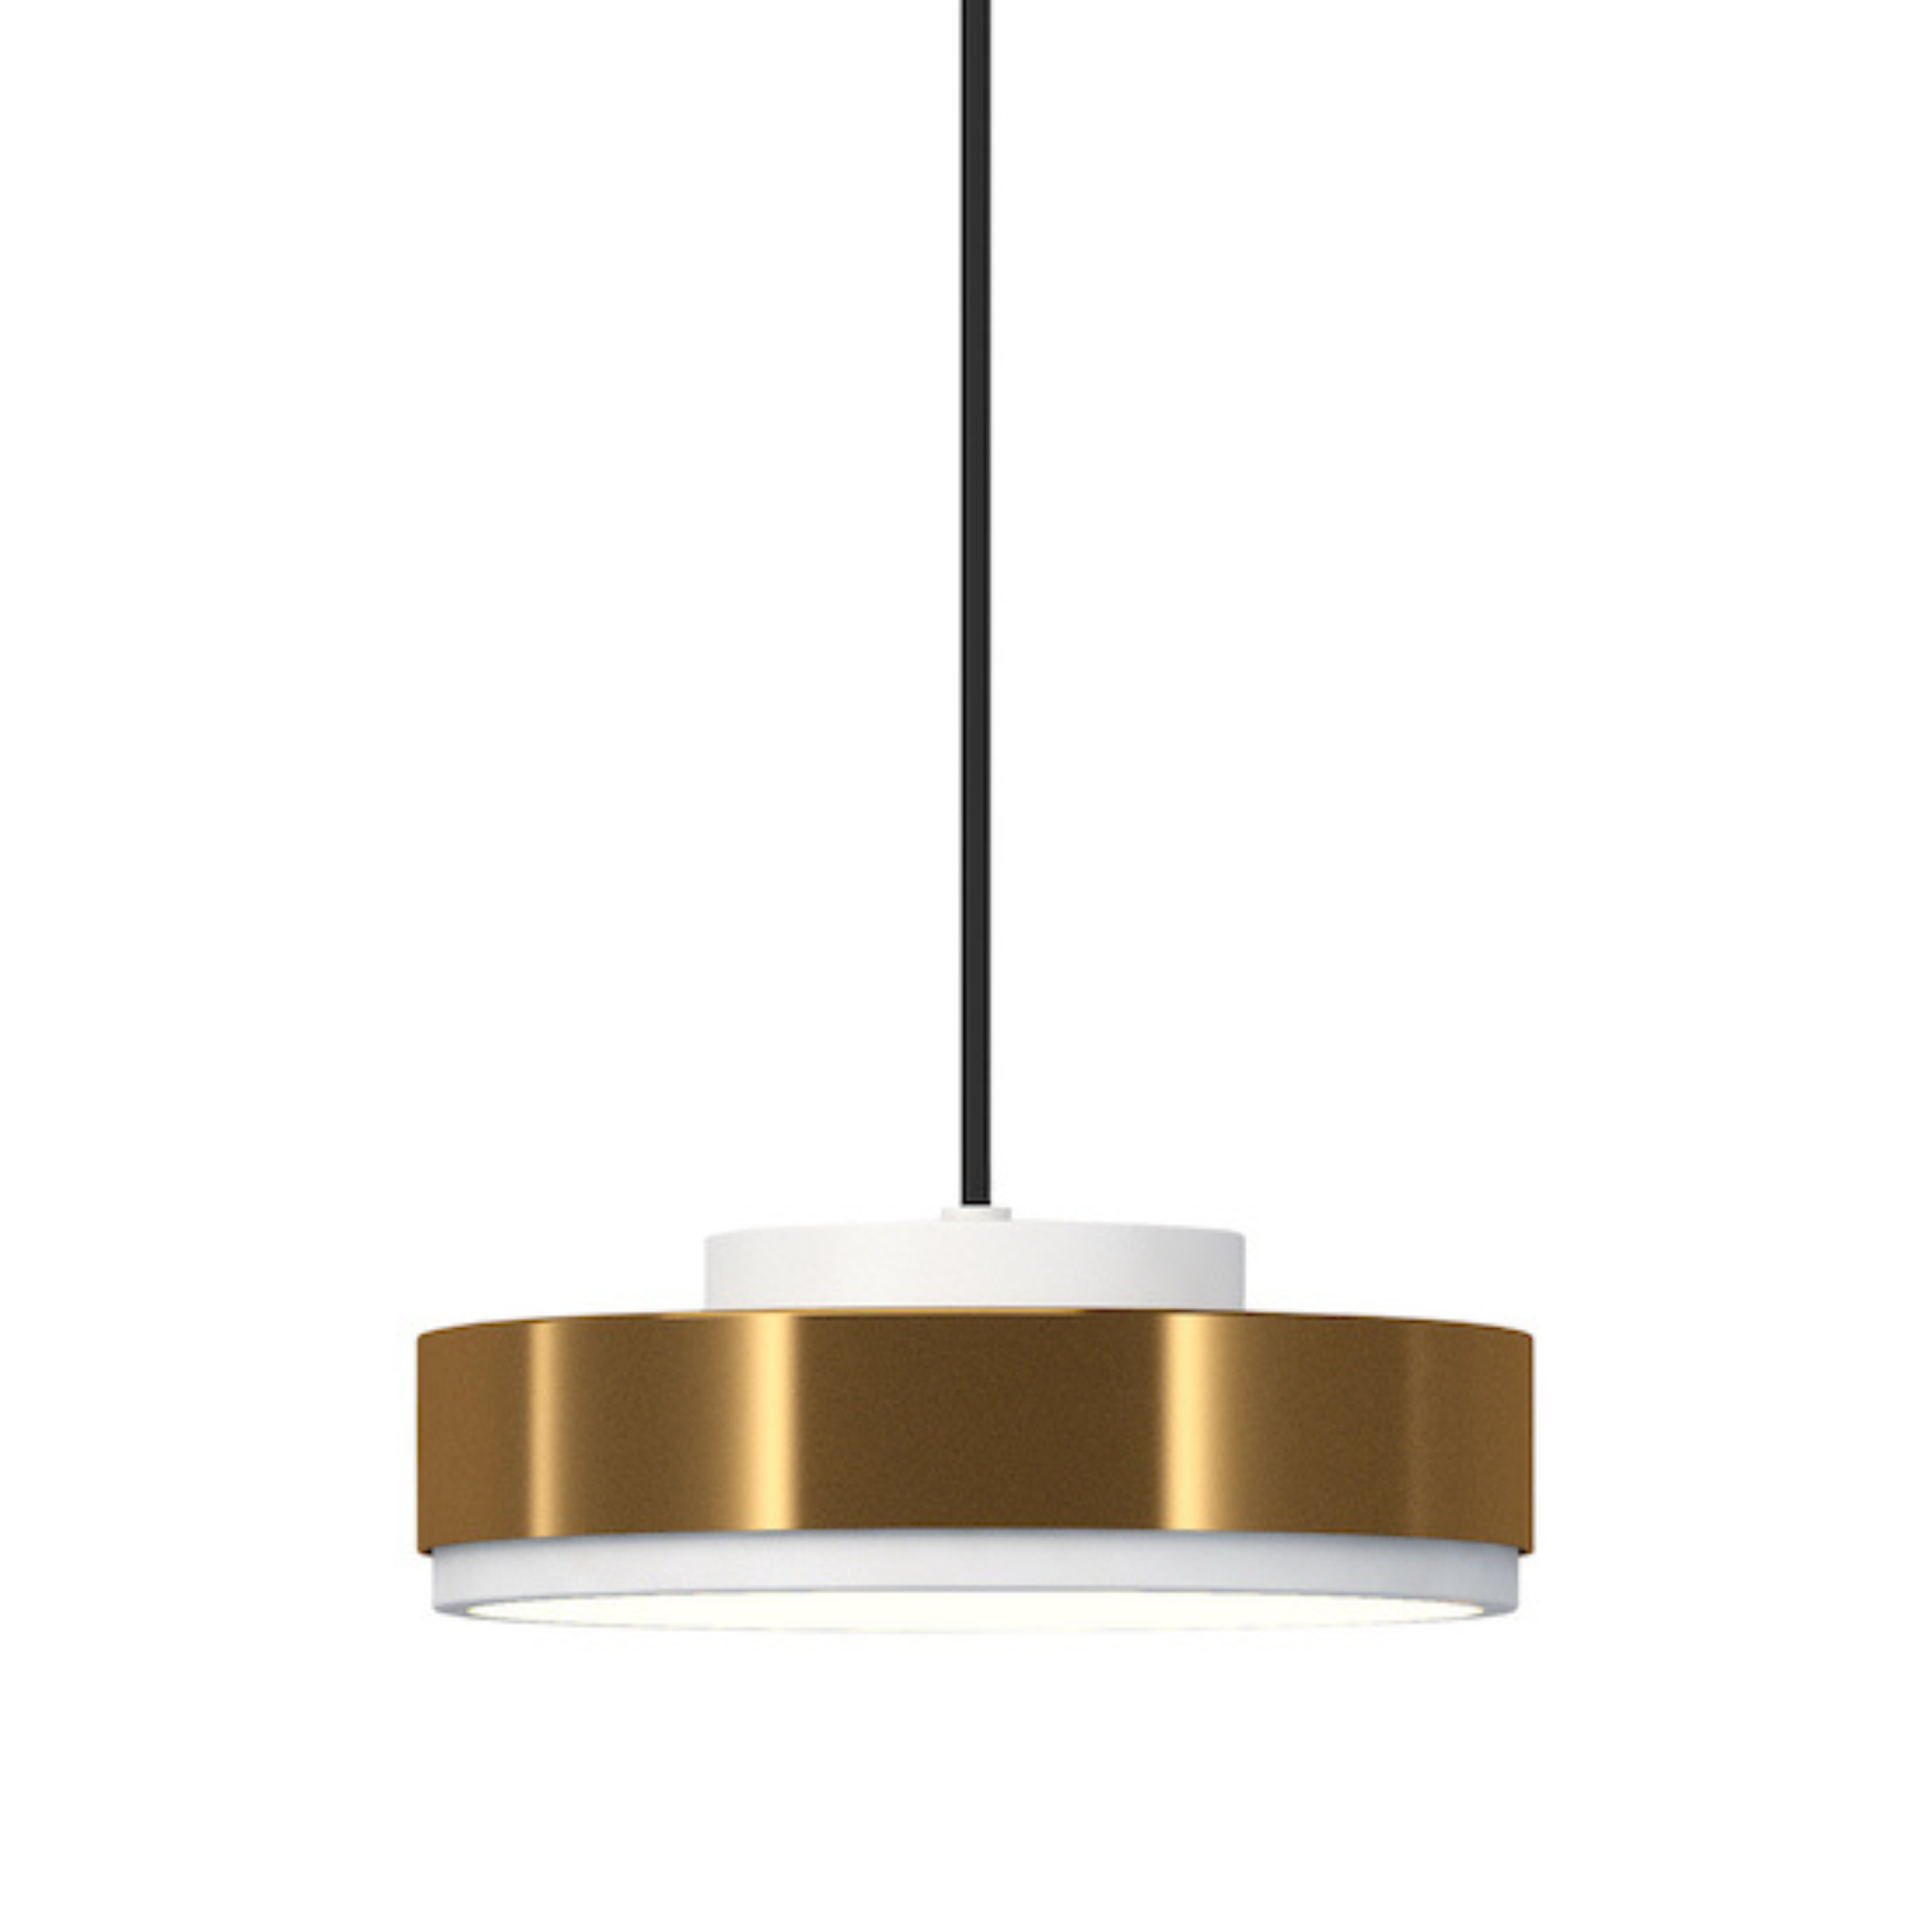 Lampa wisząca DISCUS biały z mosiężnym wykończeniem Contardi S 2 m bez opcji ściemniania Eye on Design